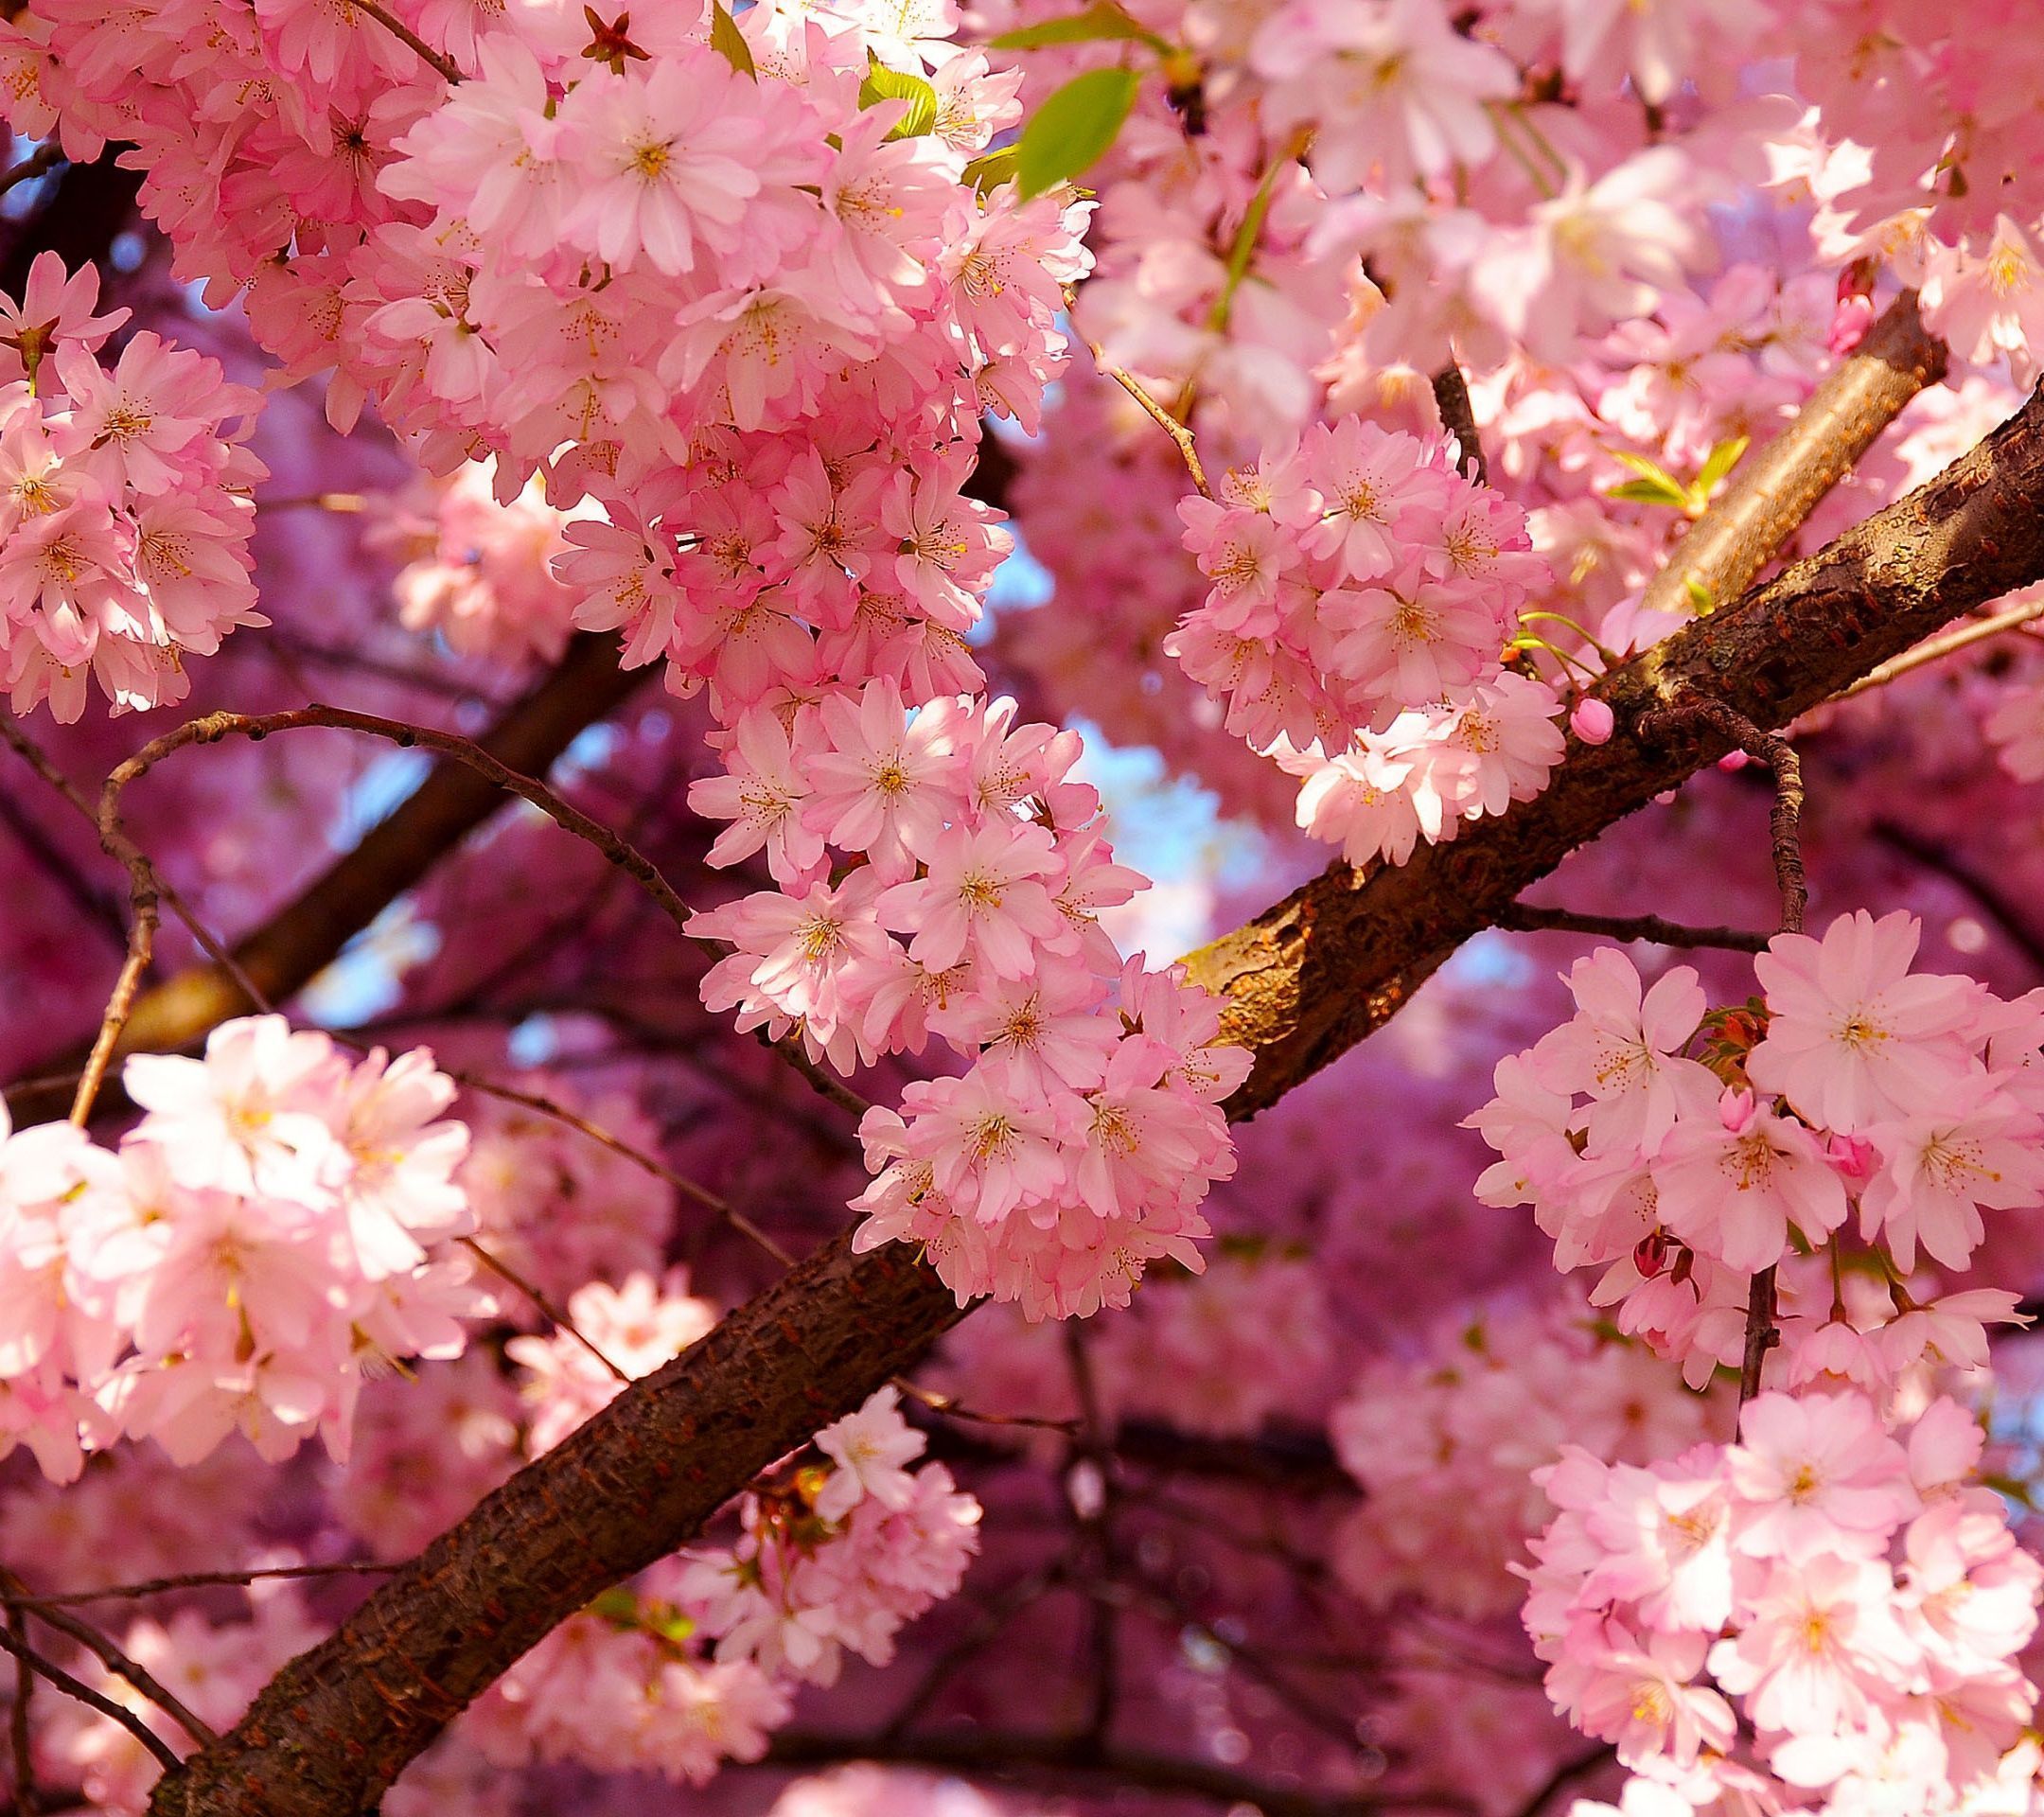 Pink Cherry FlowerSamsung Wallpaper Download | Free Samsung ...